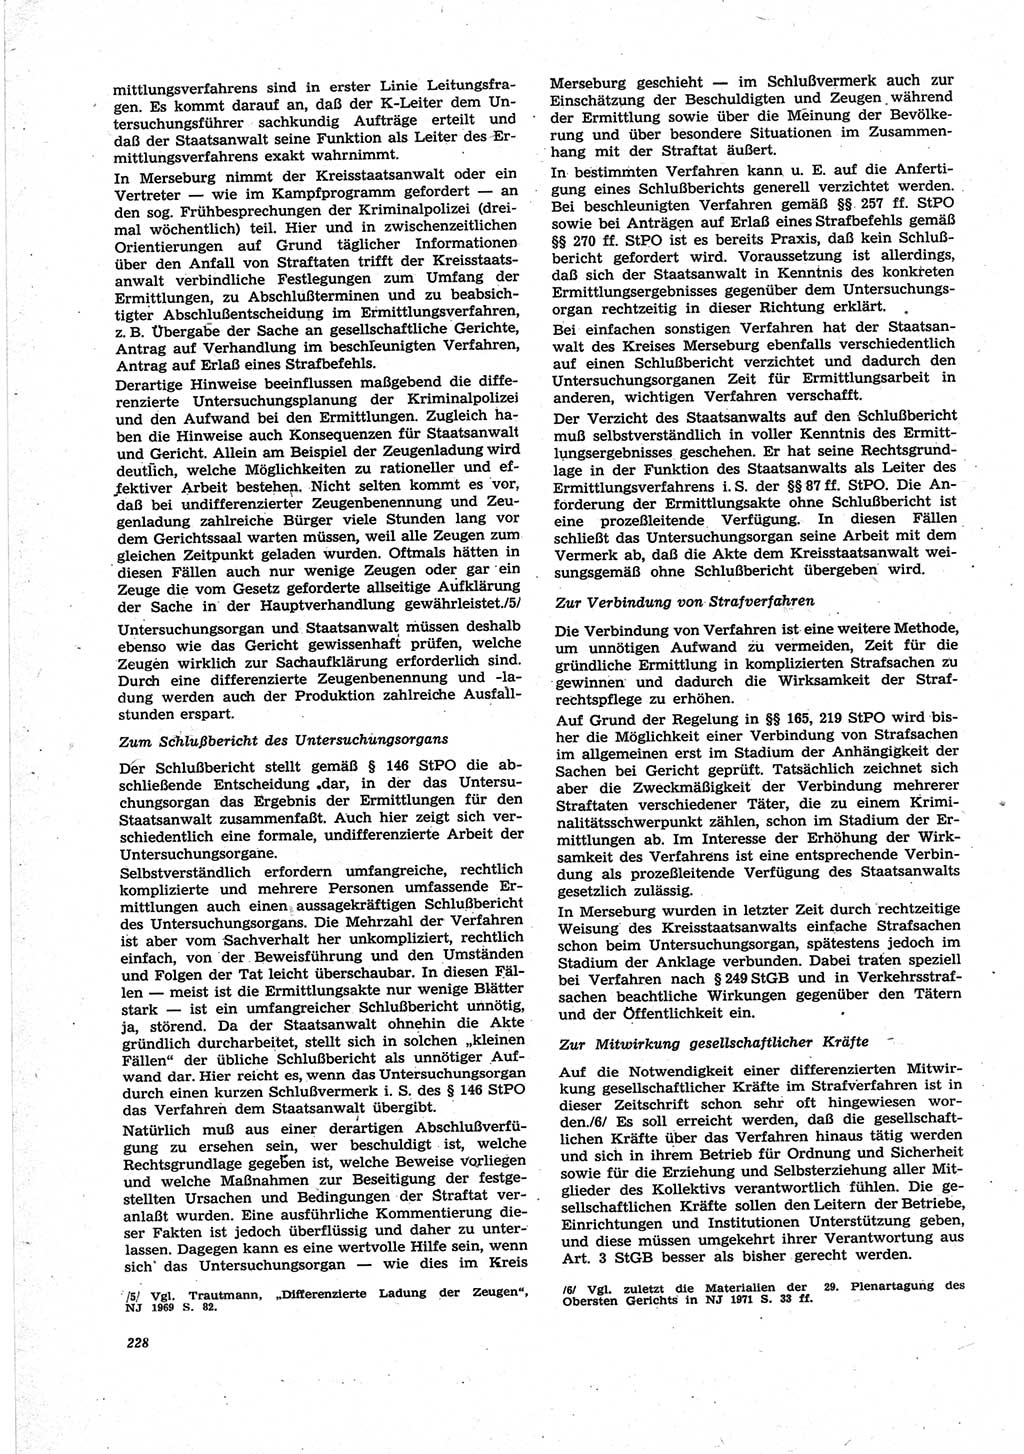 Neue Justiz (NJ), Zeitschrift für Recht und Rechtswissenschaft [Deutsche Demokratische Republik (DDR)], 25. Jahrgang 1971, Seite 228 (NJ DDR 1971, S. 228)